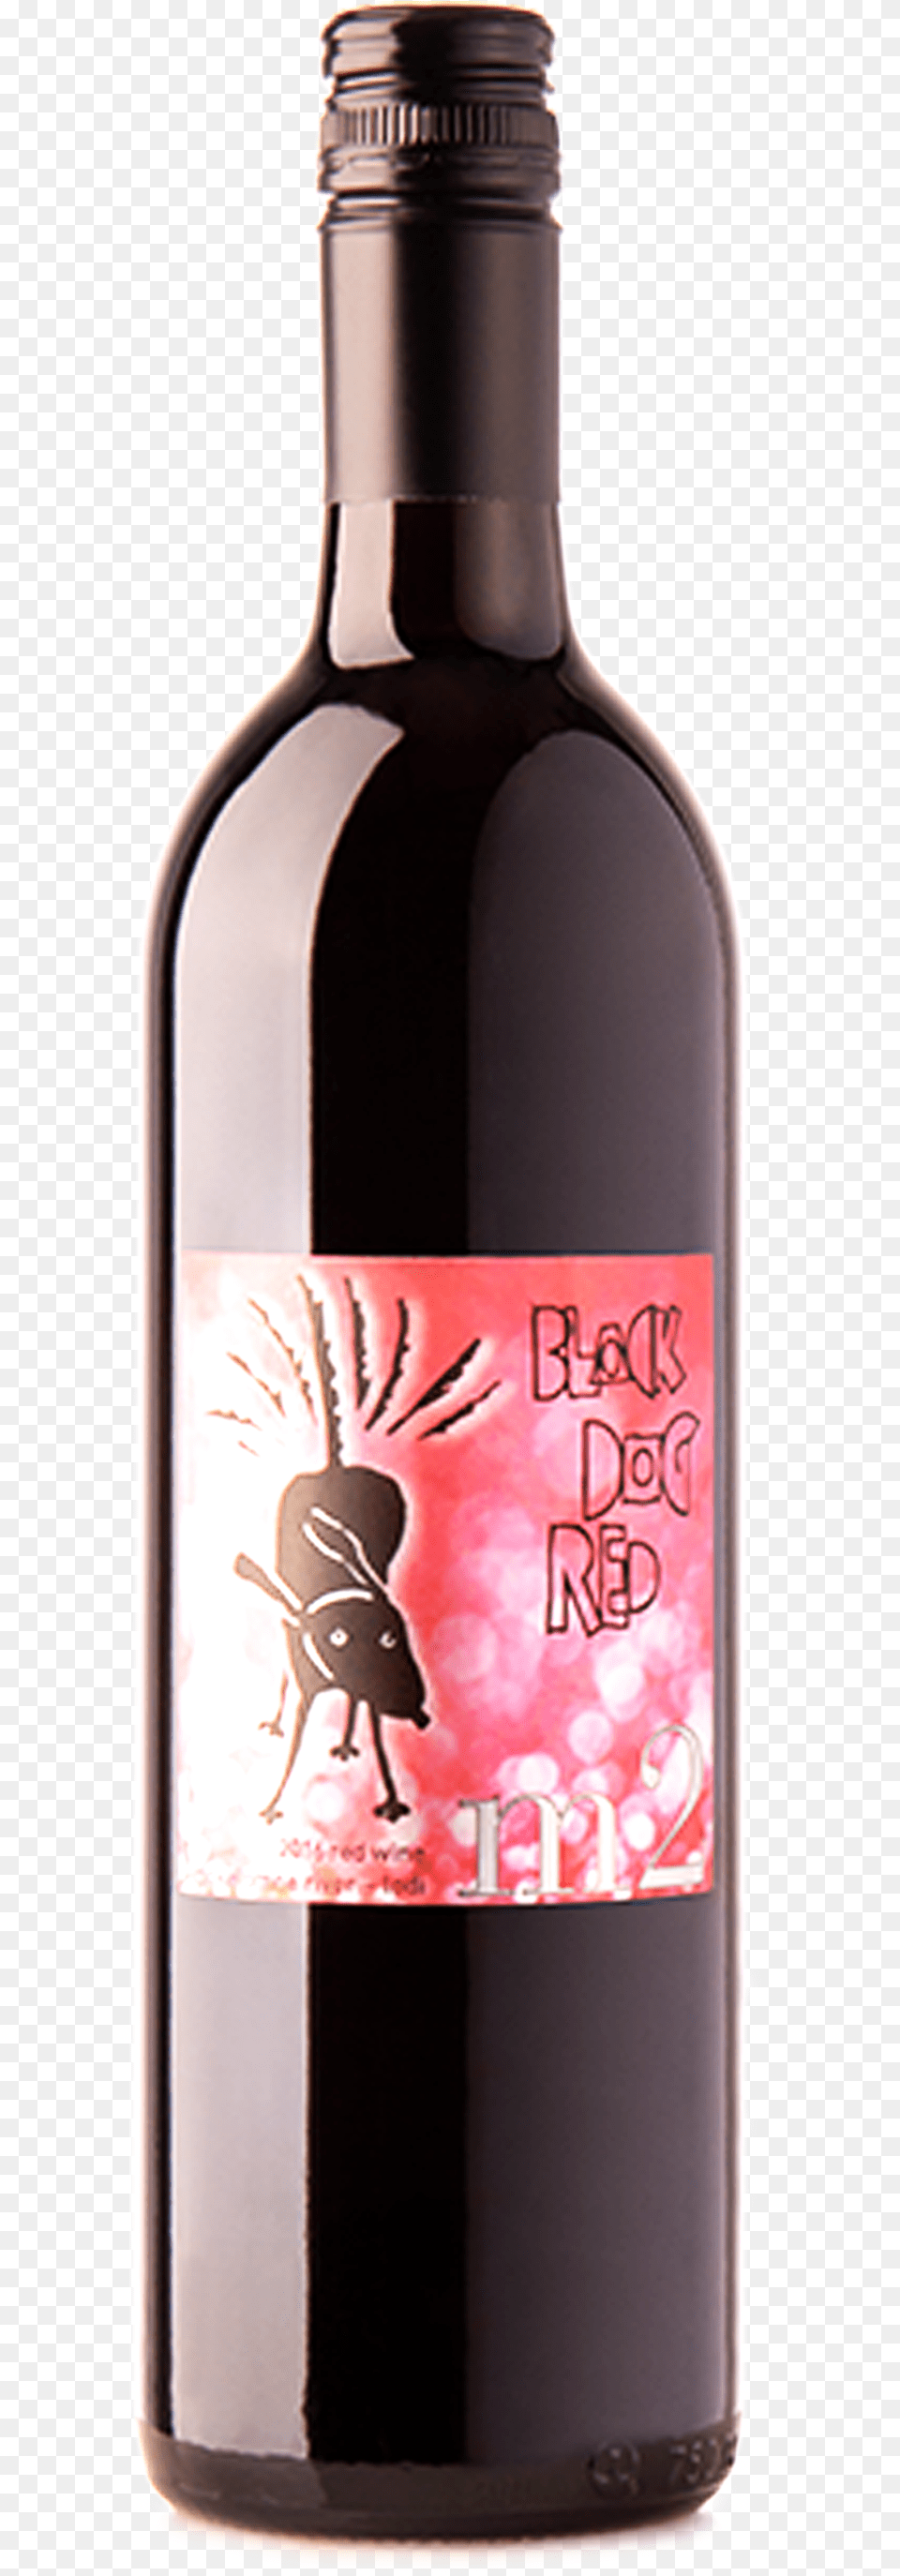 2016 Black Dog Red Glass Bottle, Alcohol, Beverage, Liquor, Wine Png